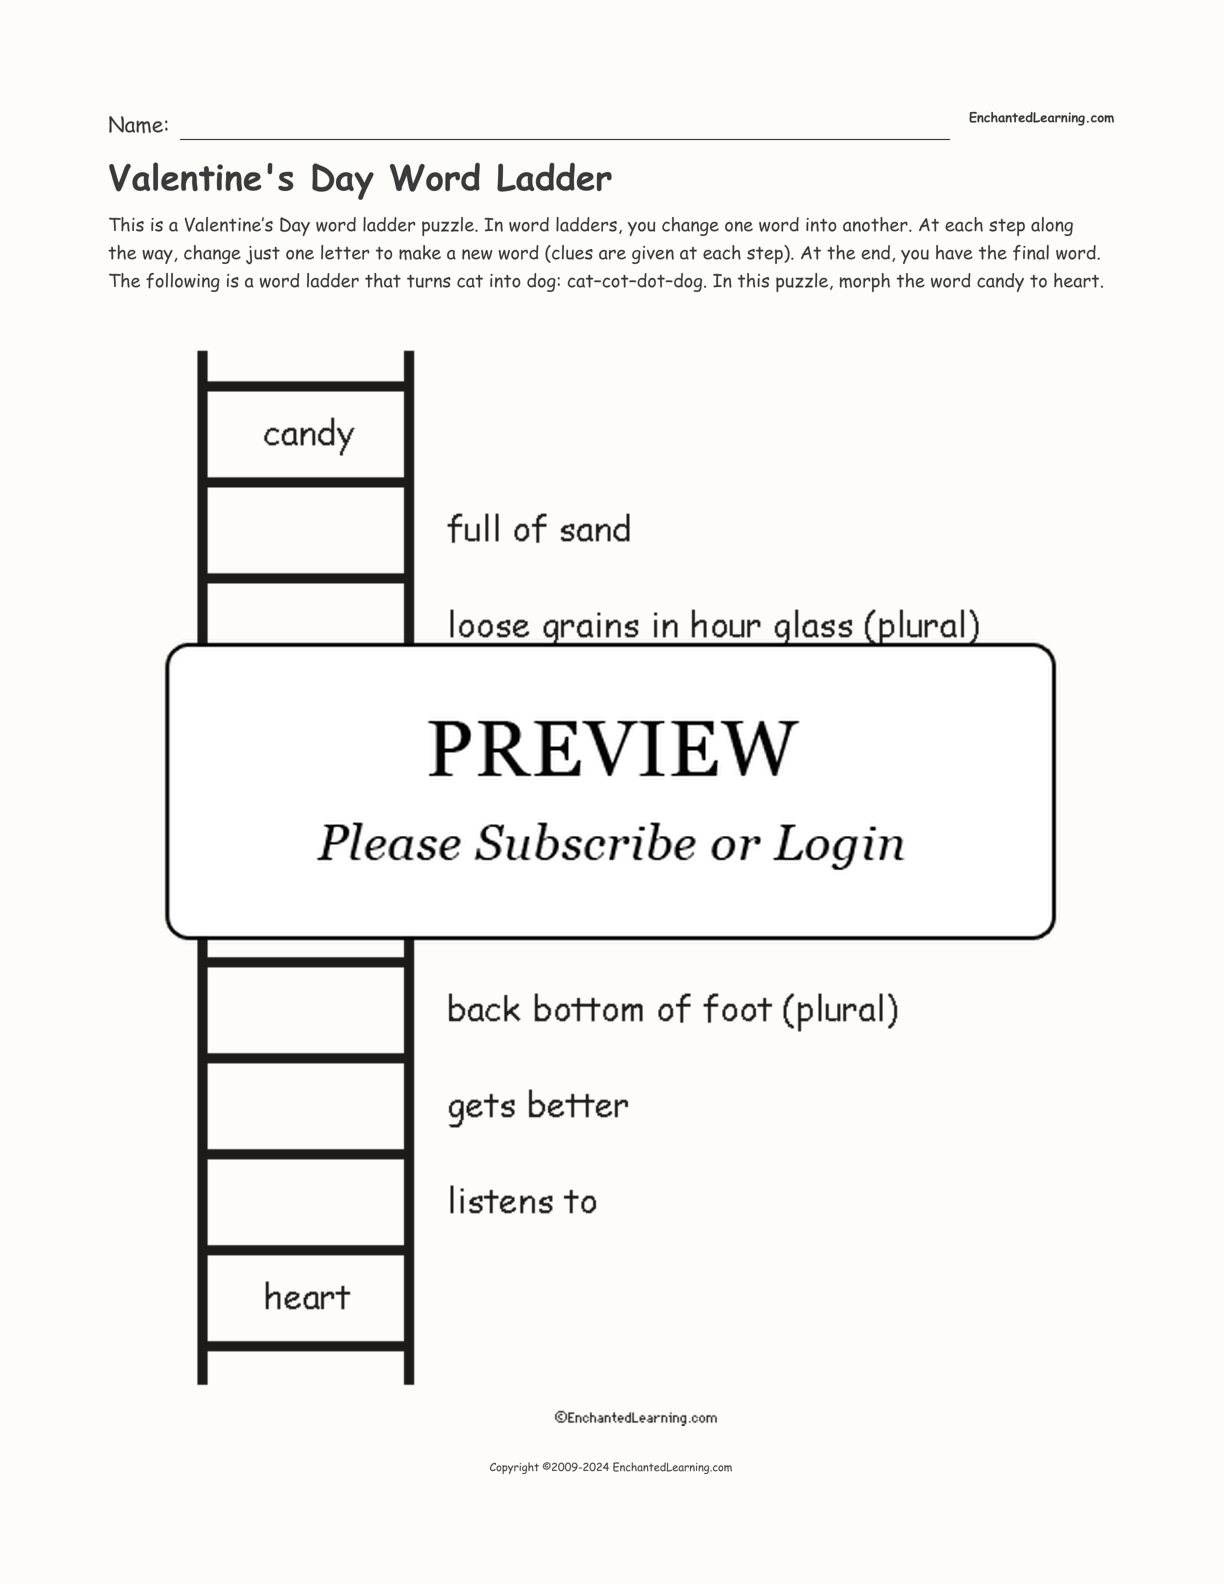 Valentine's Day Word Ladder interactive worksheet page 1